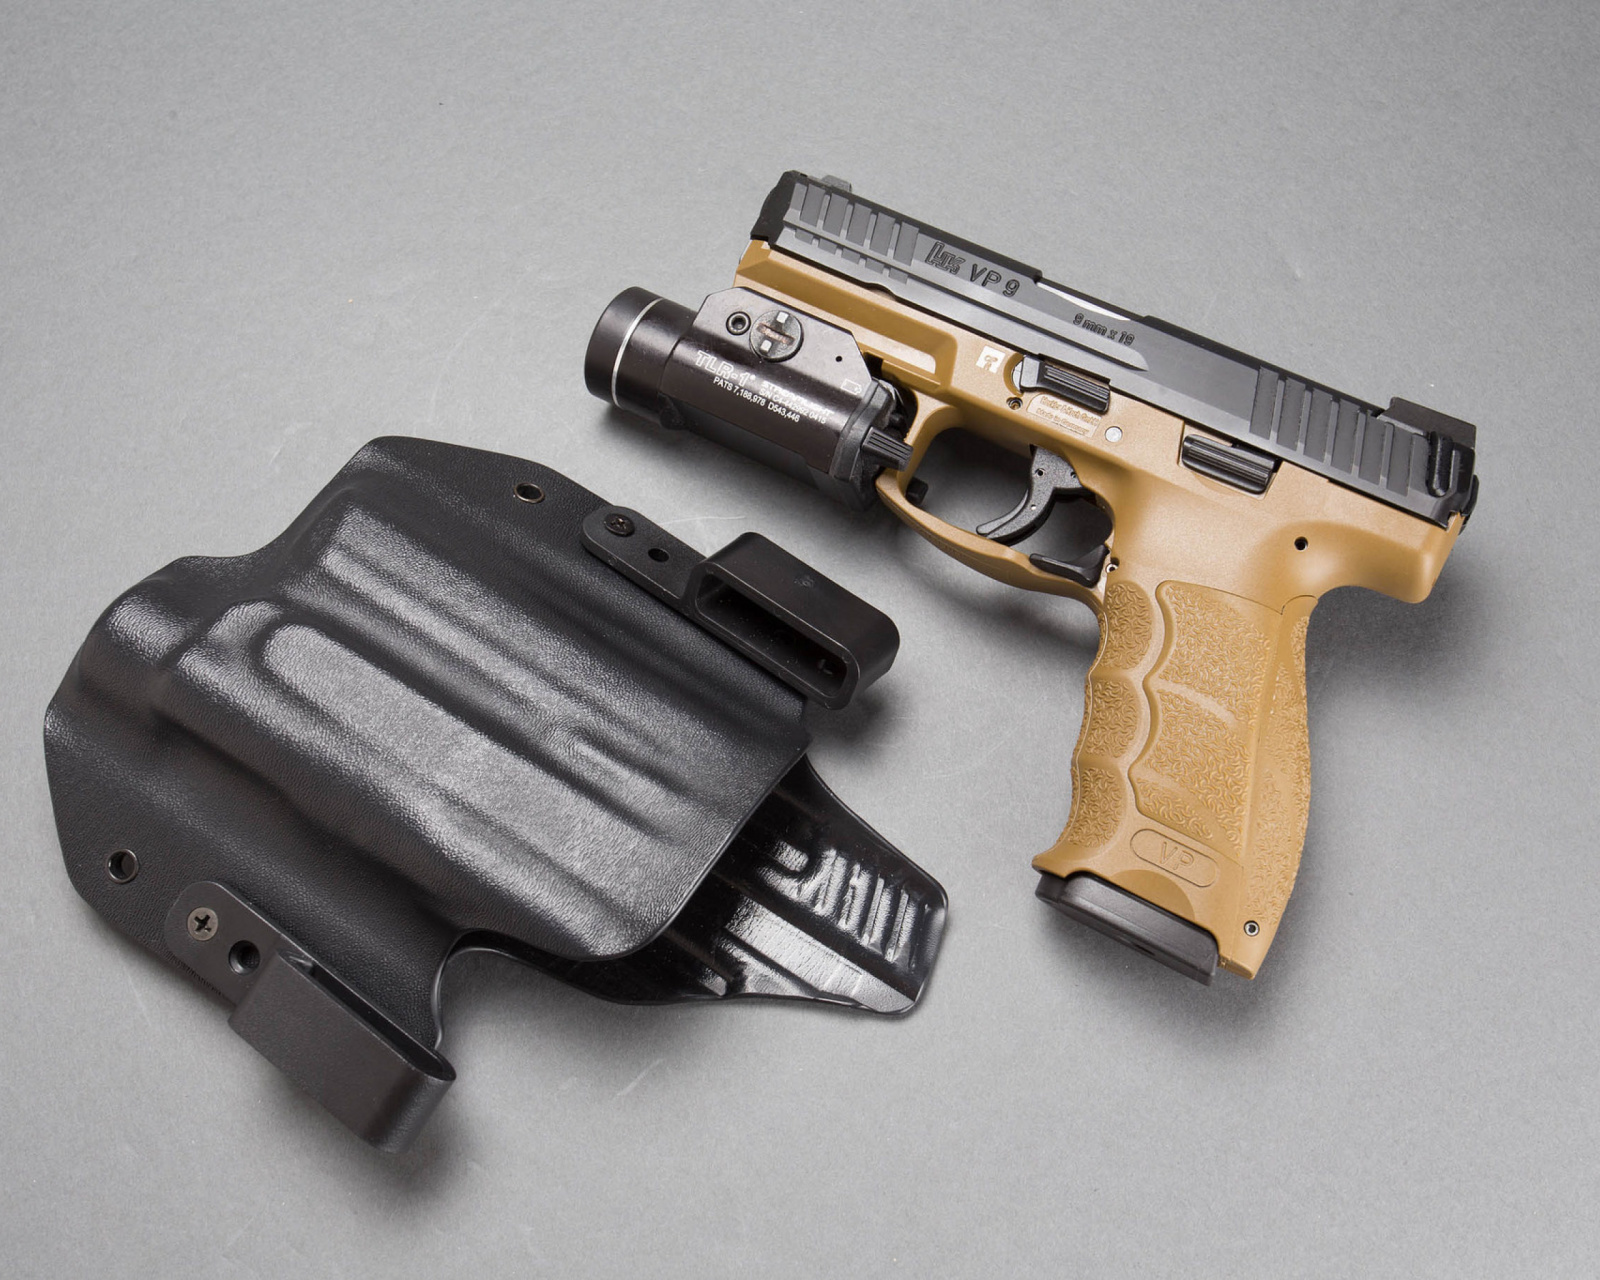 Pistols Heckler & Koch 9mm wallpaper 1600x1280